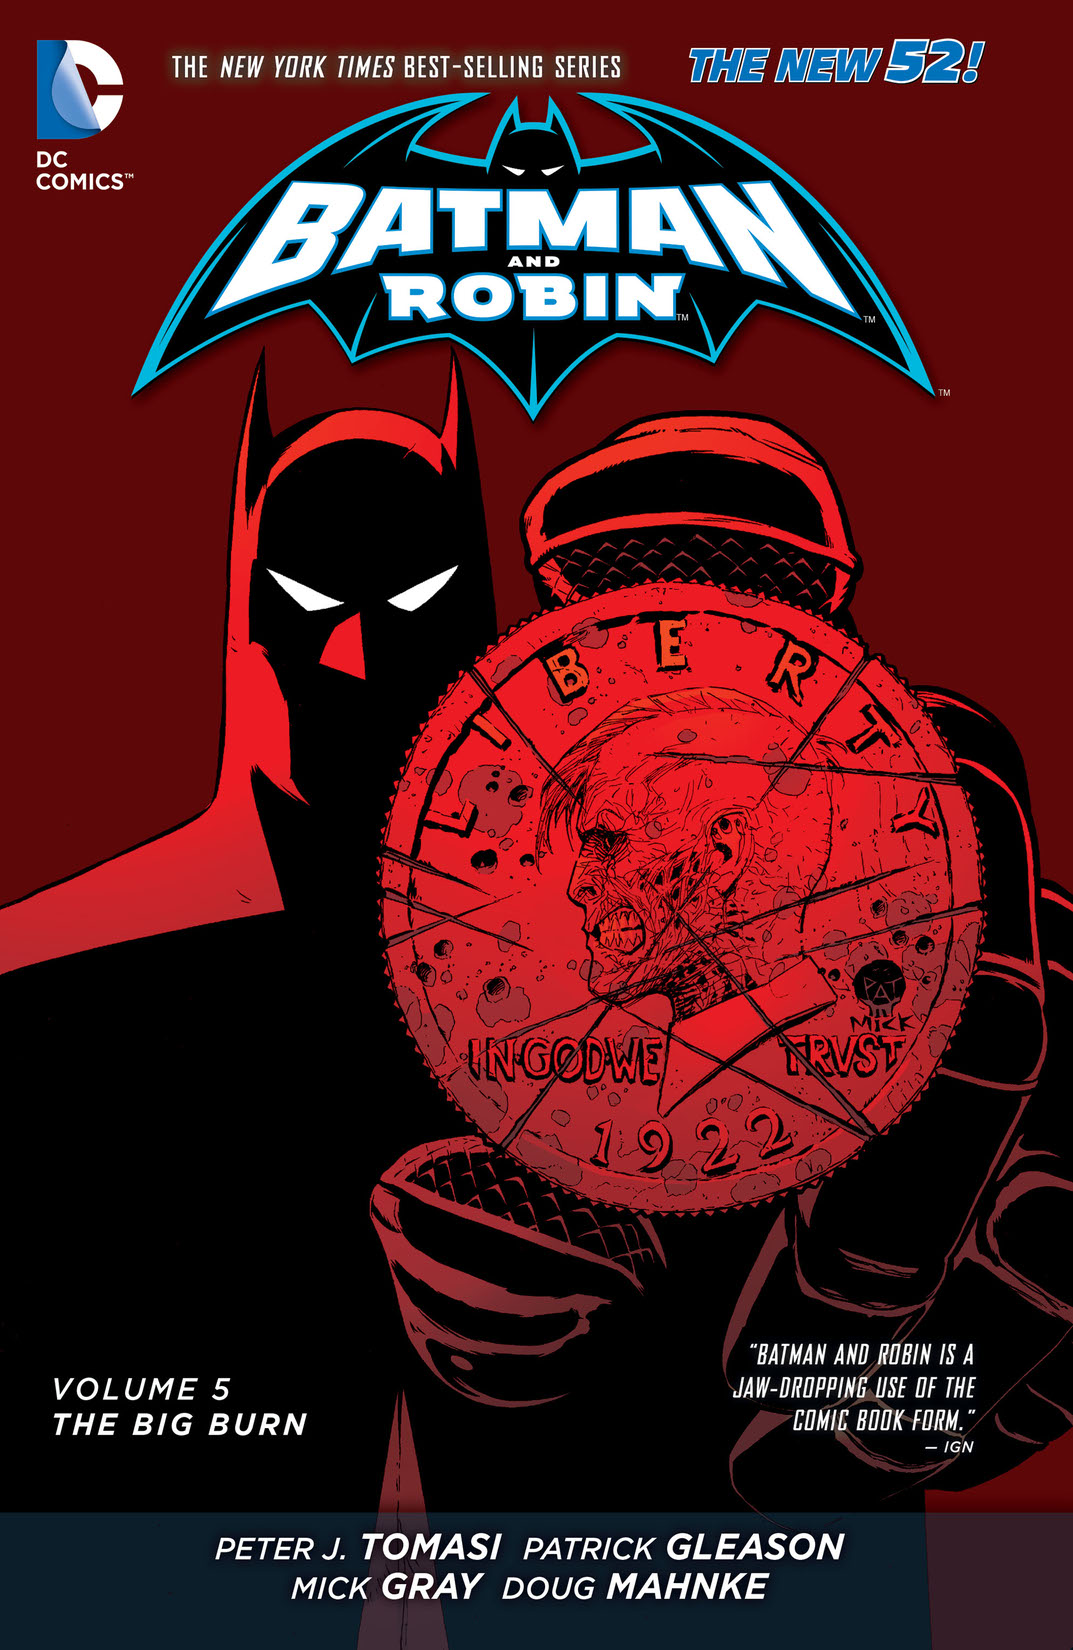 Batman and Robin Vol. 5: The Big Burn preview images